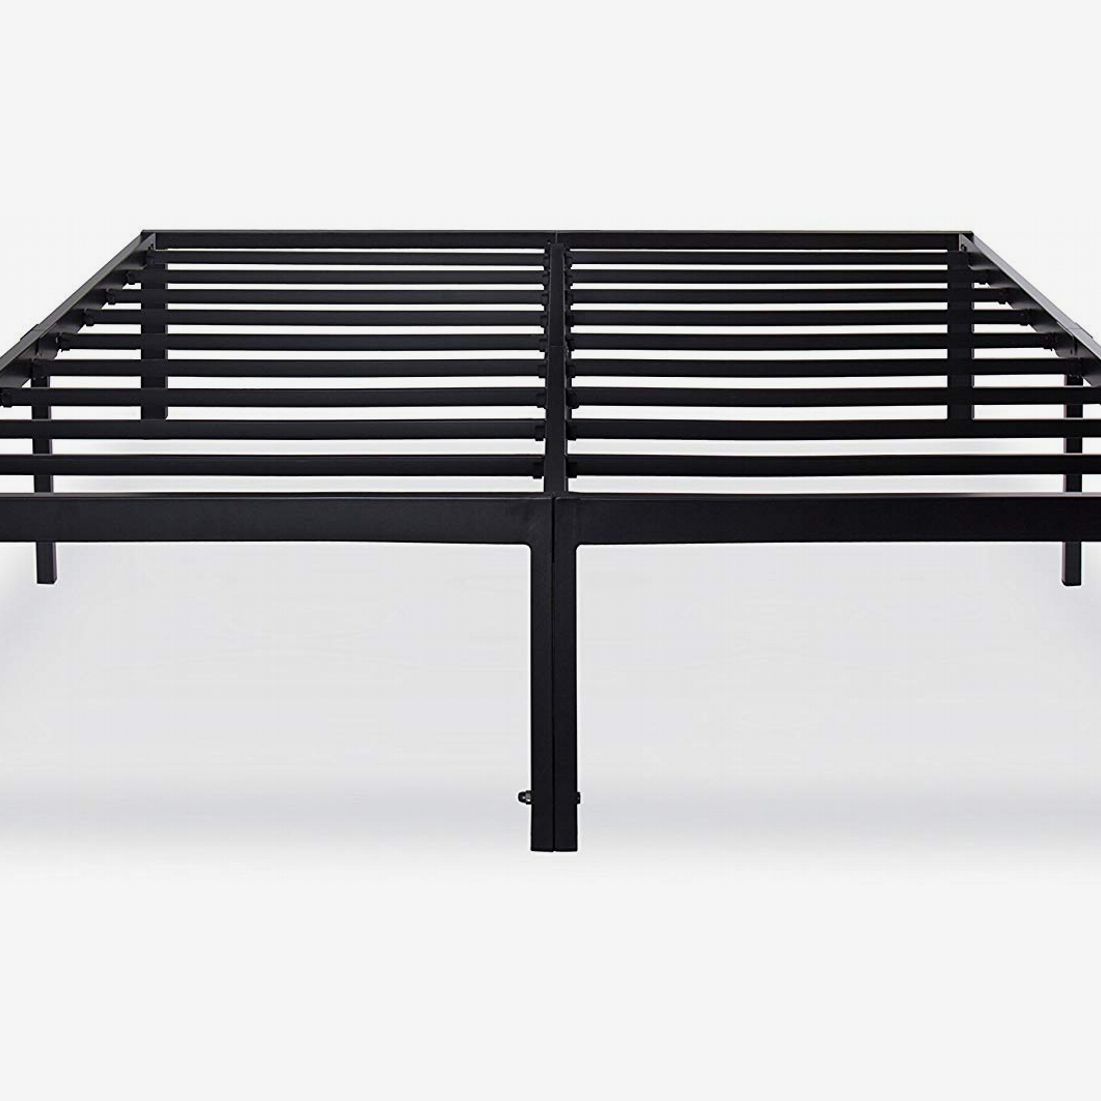 19 Best Metal Bed Frames 2020 The, High Metal Bed Frame